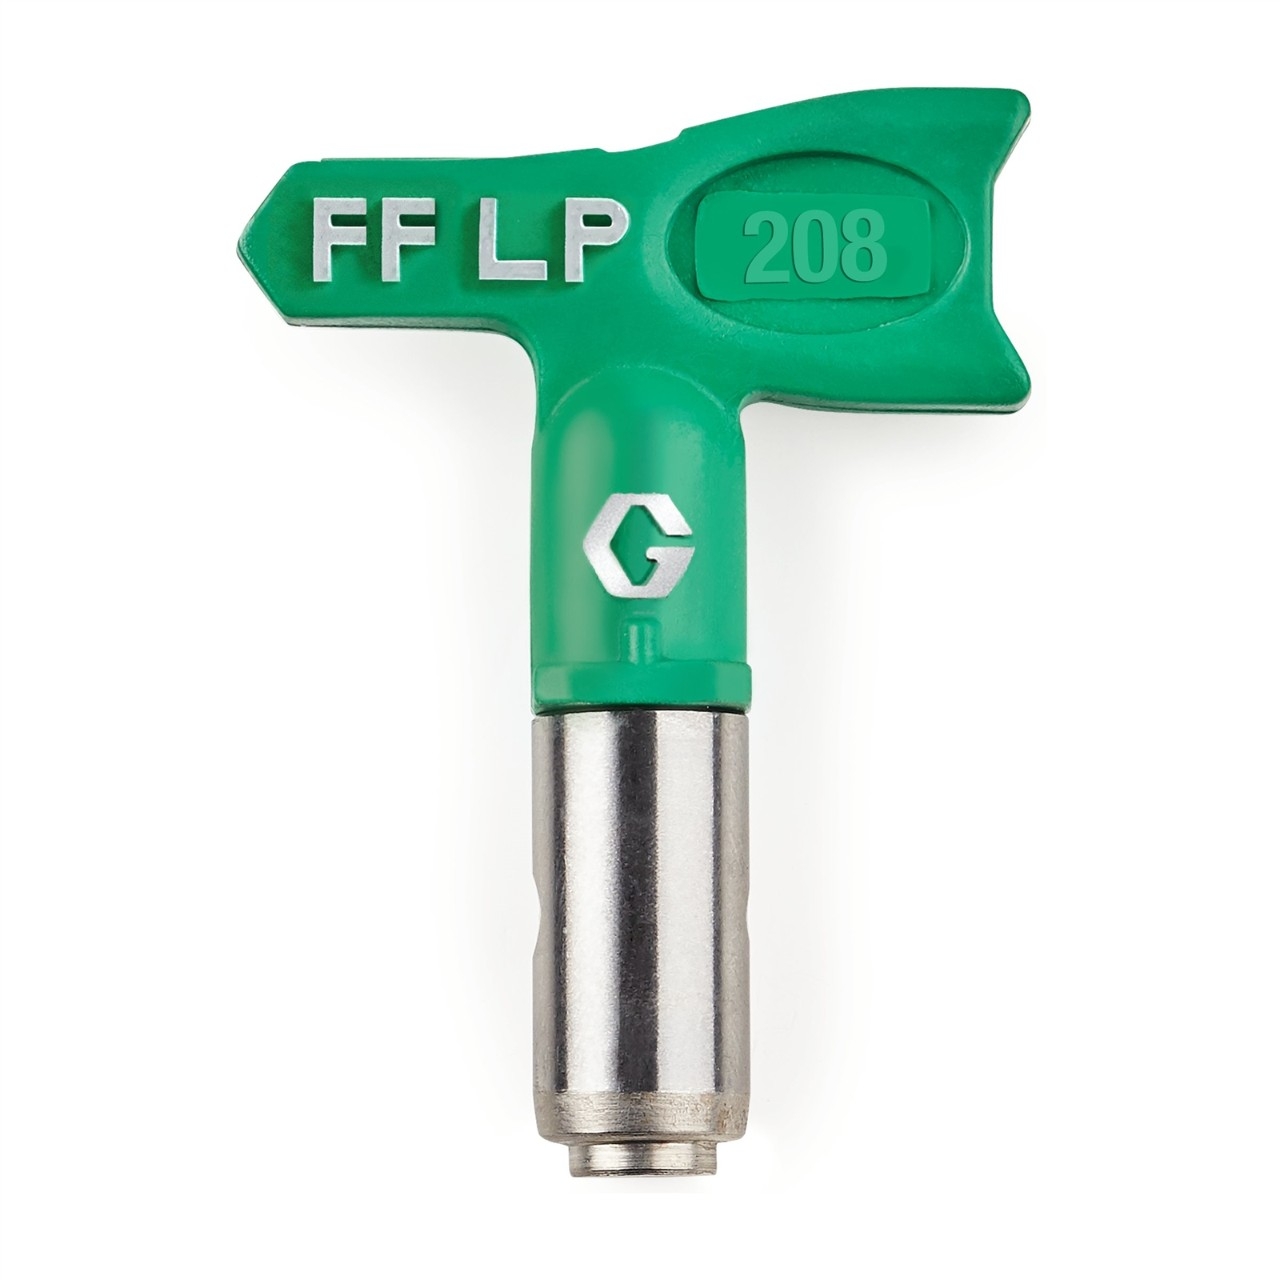 Duză FFLP SwitchTip 208 pentru finisaj fin la presiune scăzută, compatibilă cu RAC X